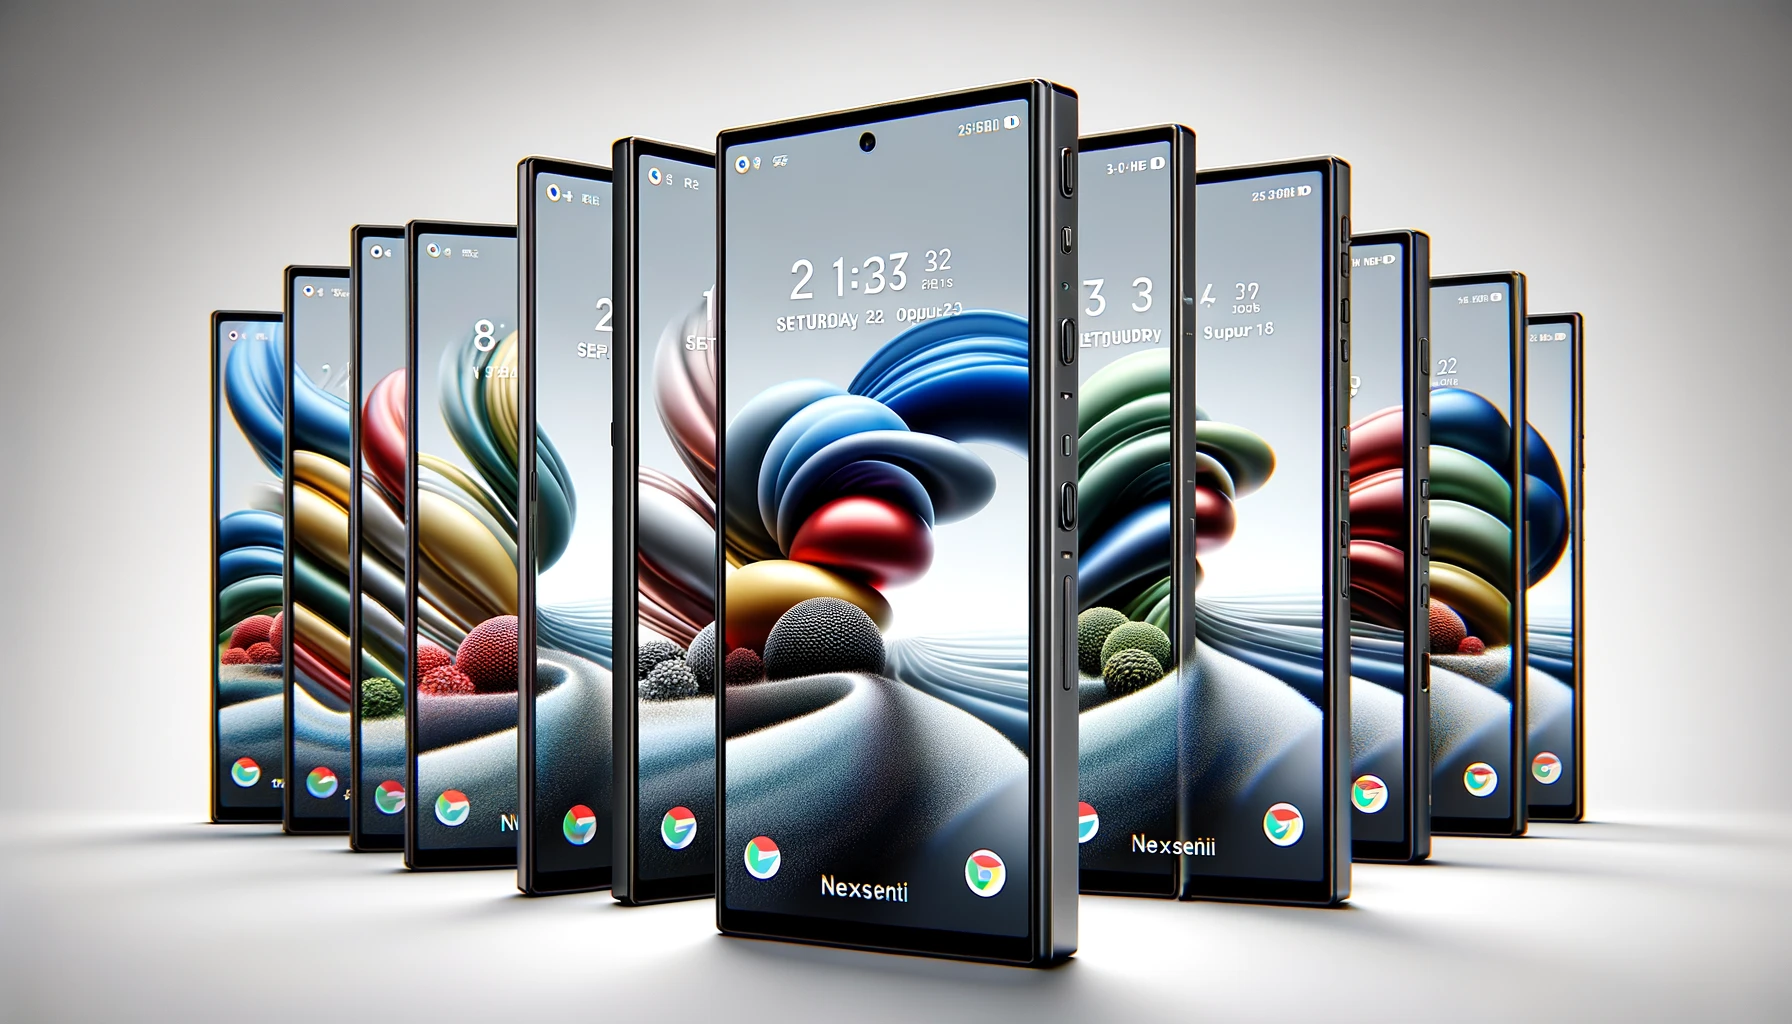 Samsung отказалась выпускать дешевый складной смартфон на манер Xiaomi и Tecno